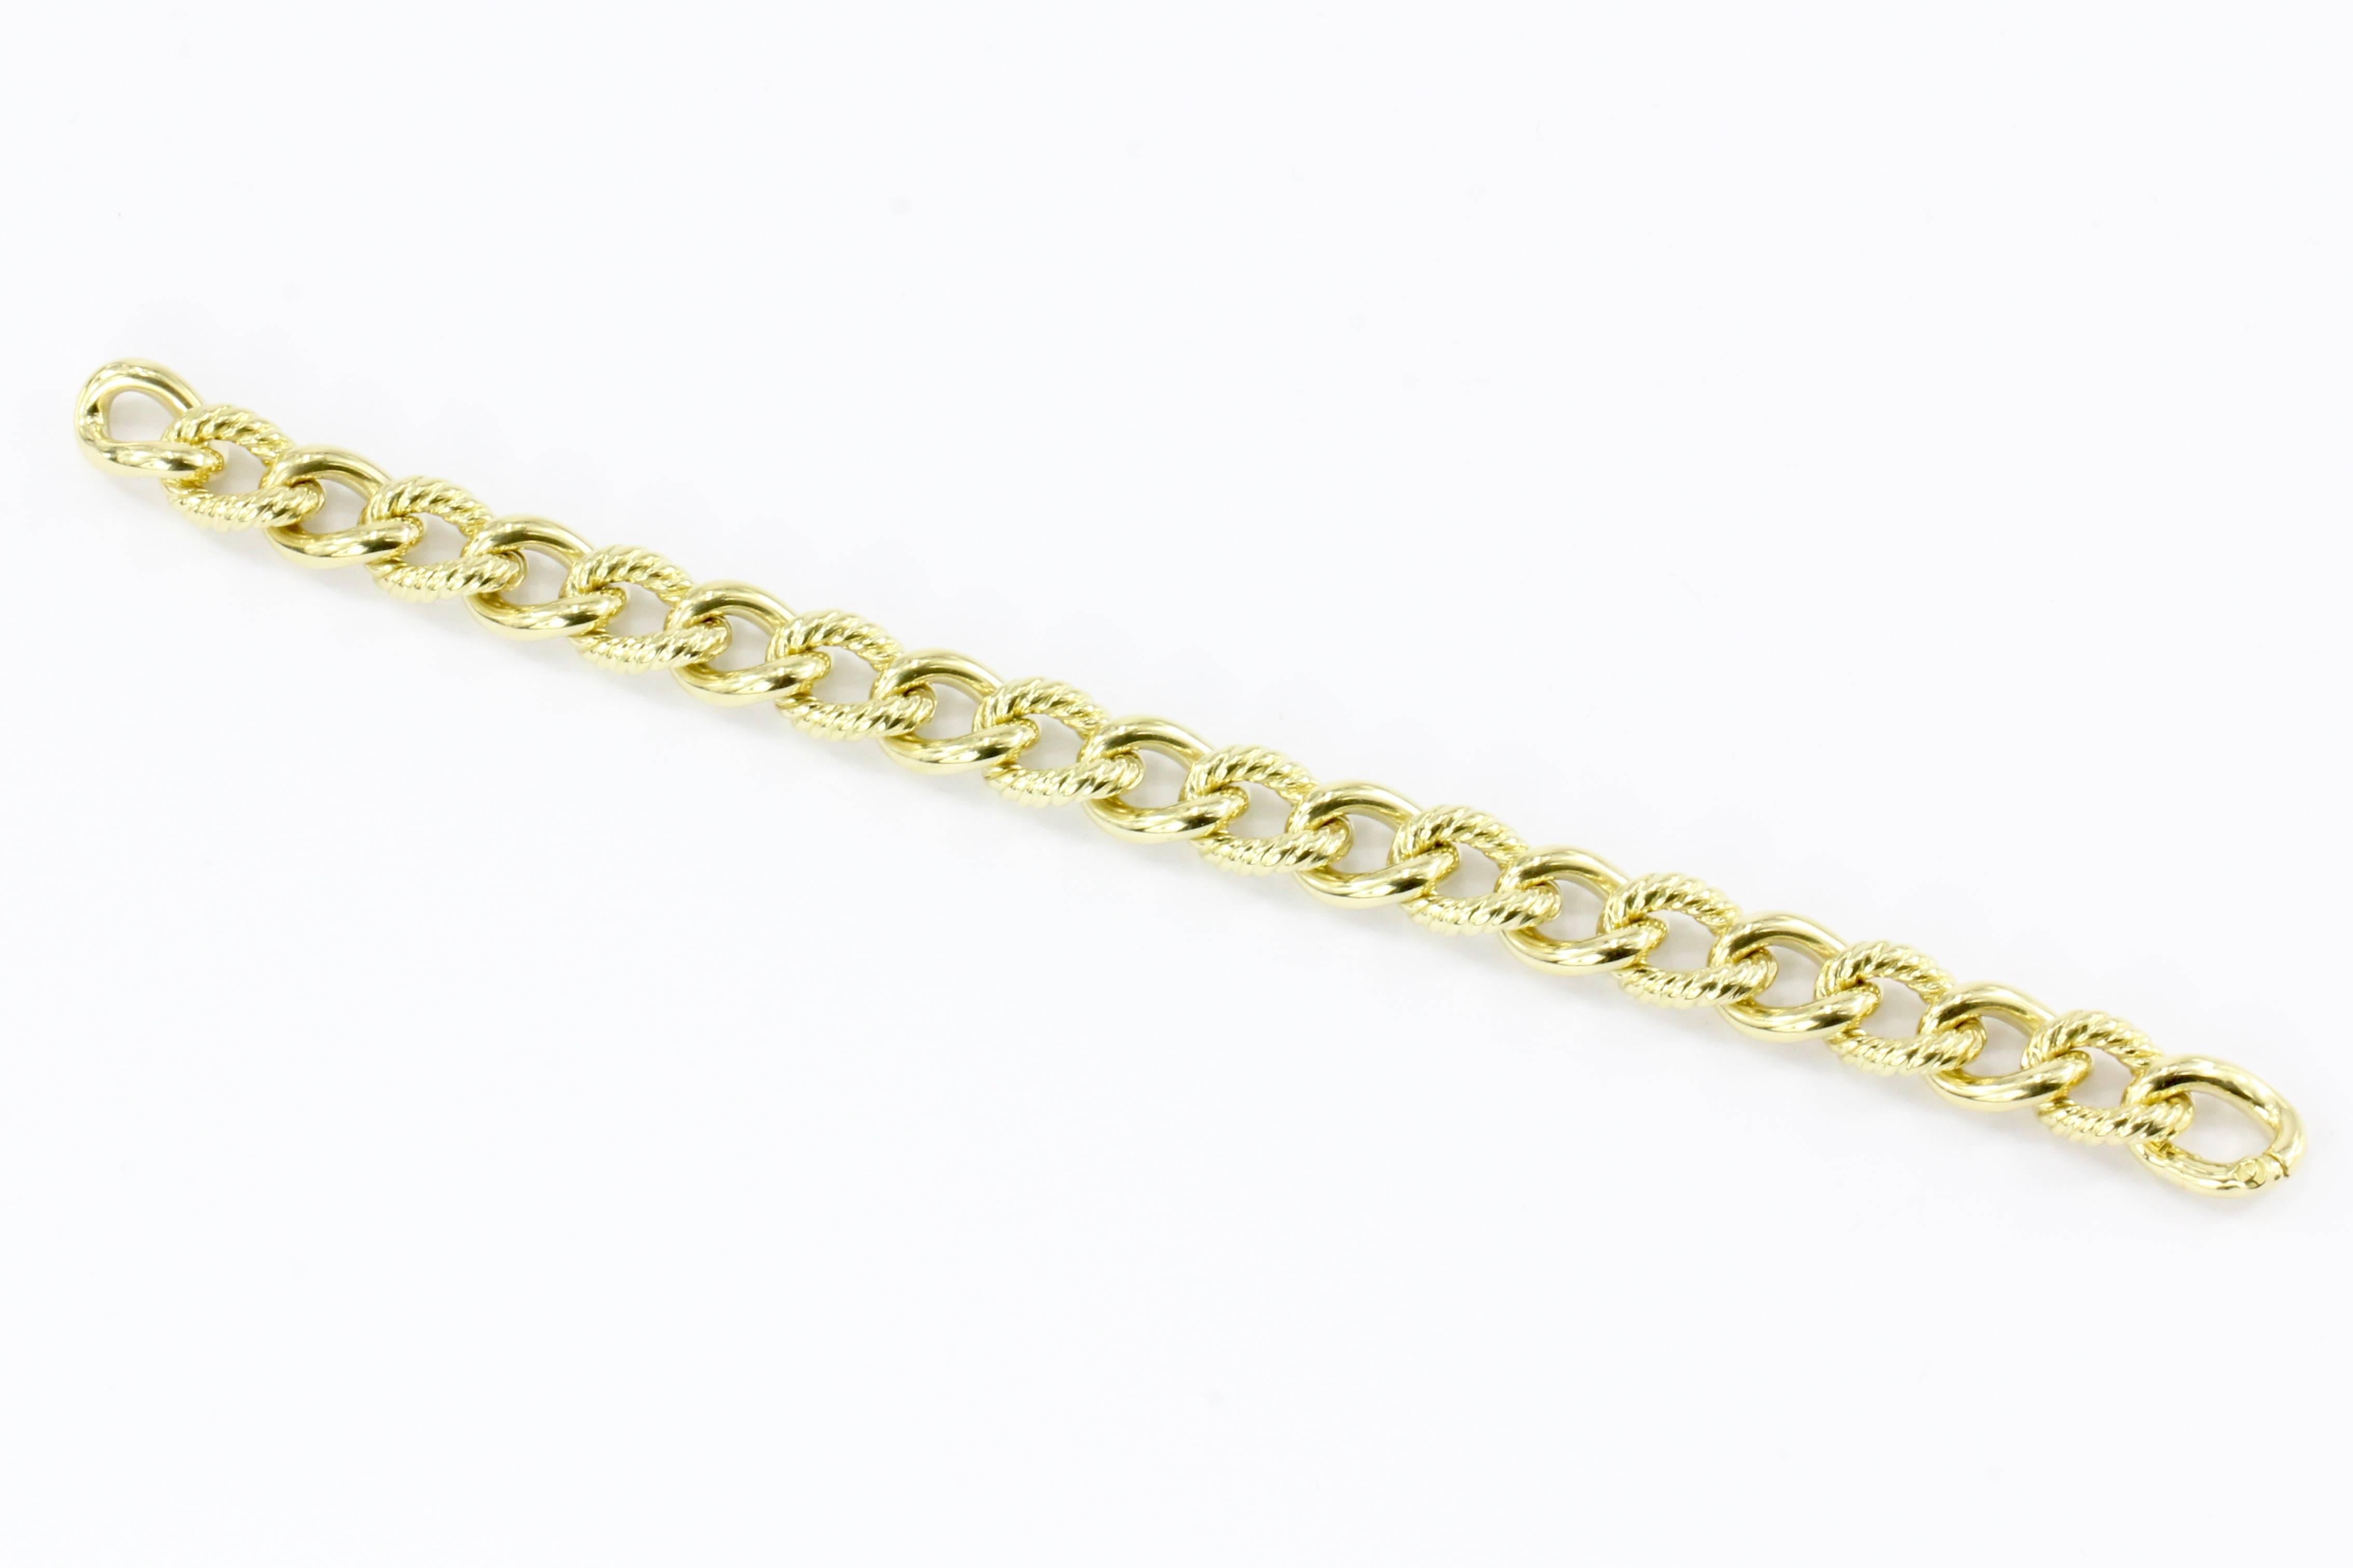 18 carat gold curb chain